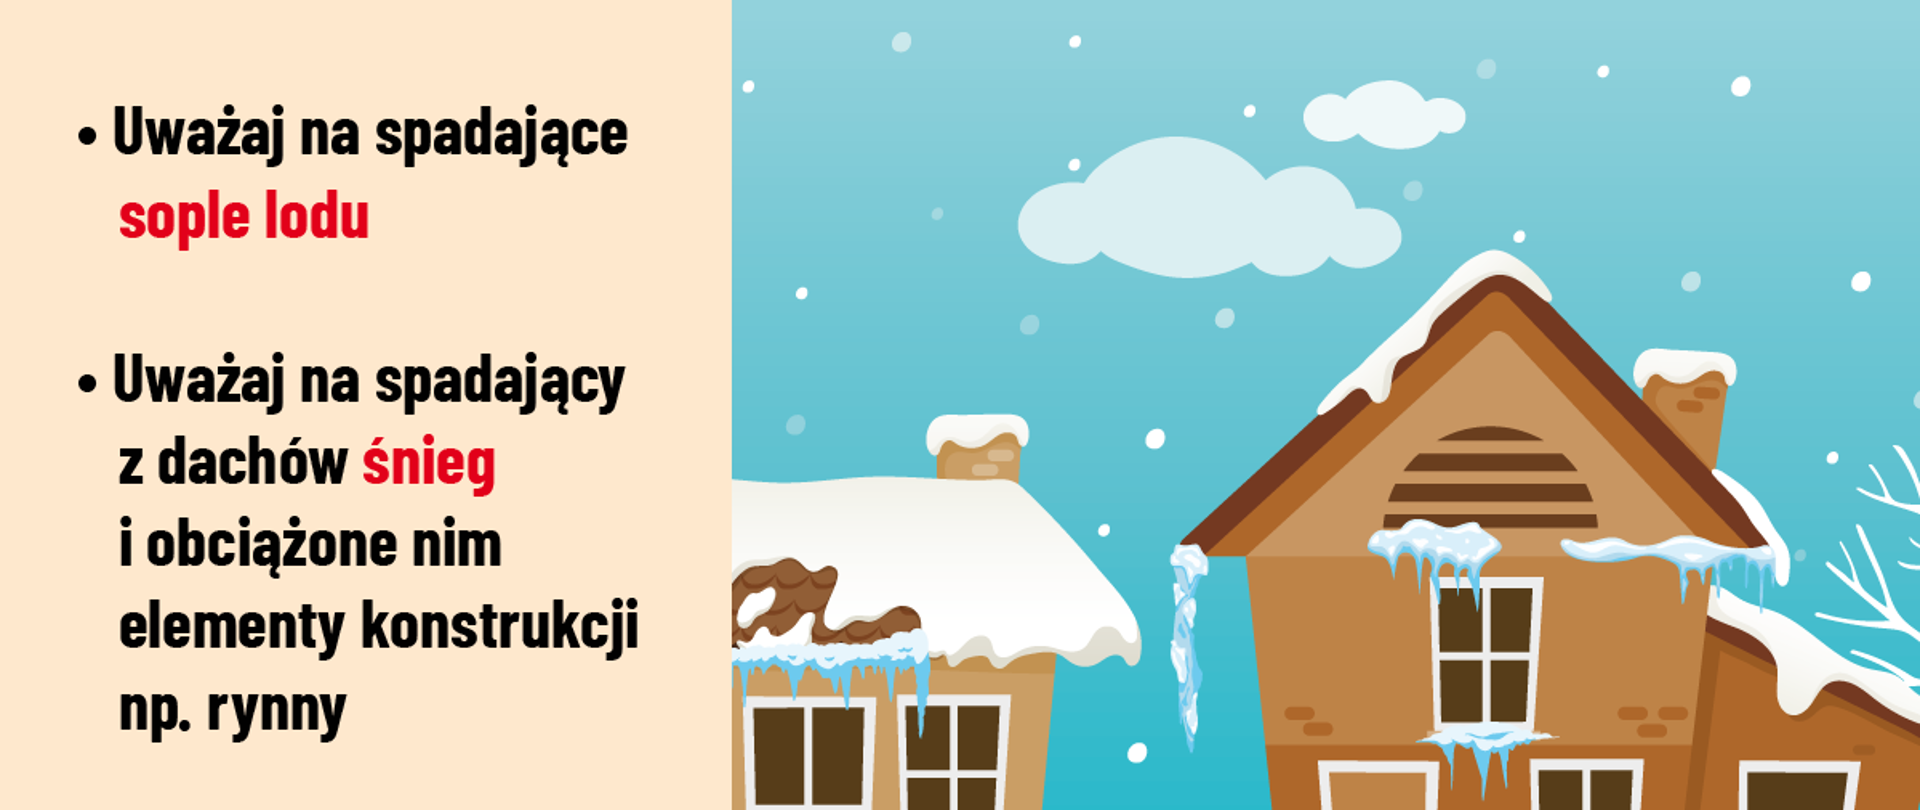 Obrazek przedstawia rysunki domów z pokrywą śnieżną z informacją aby uważać na śnieg i sople. 